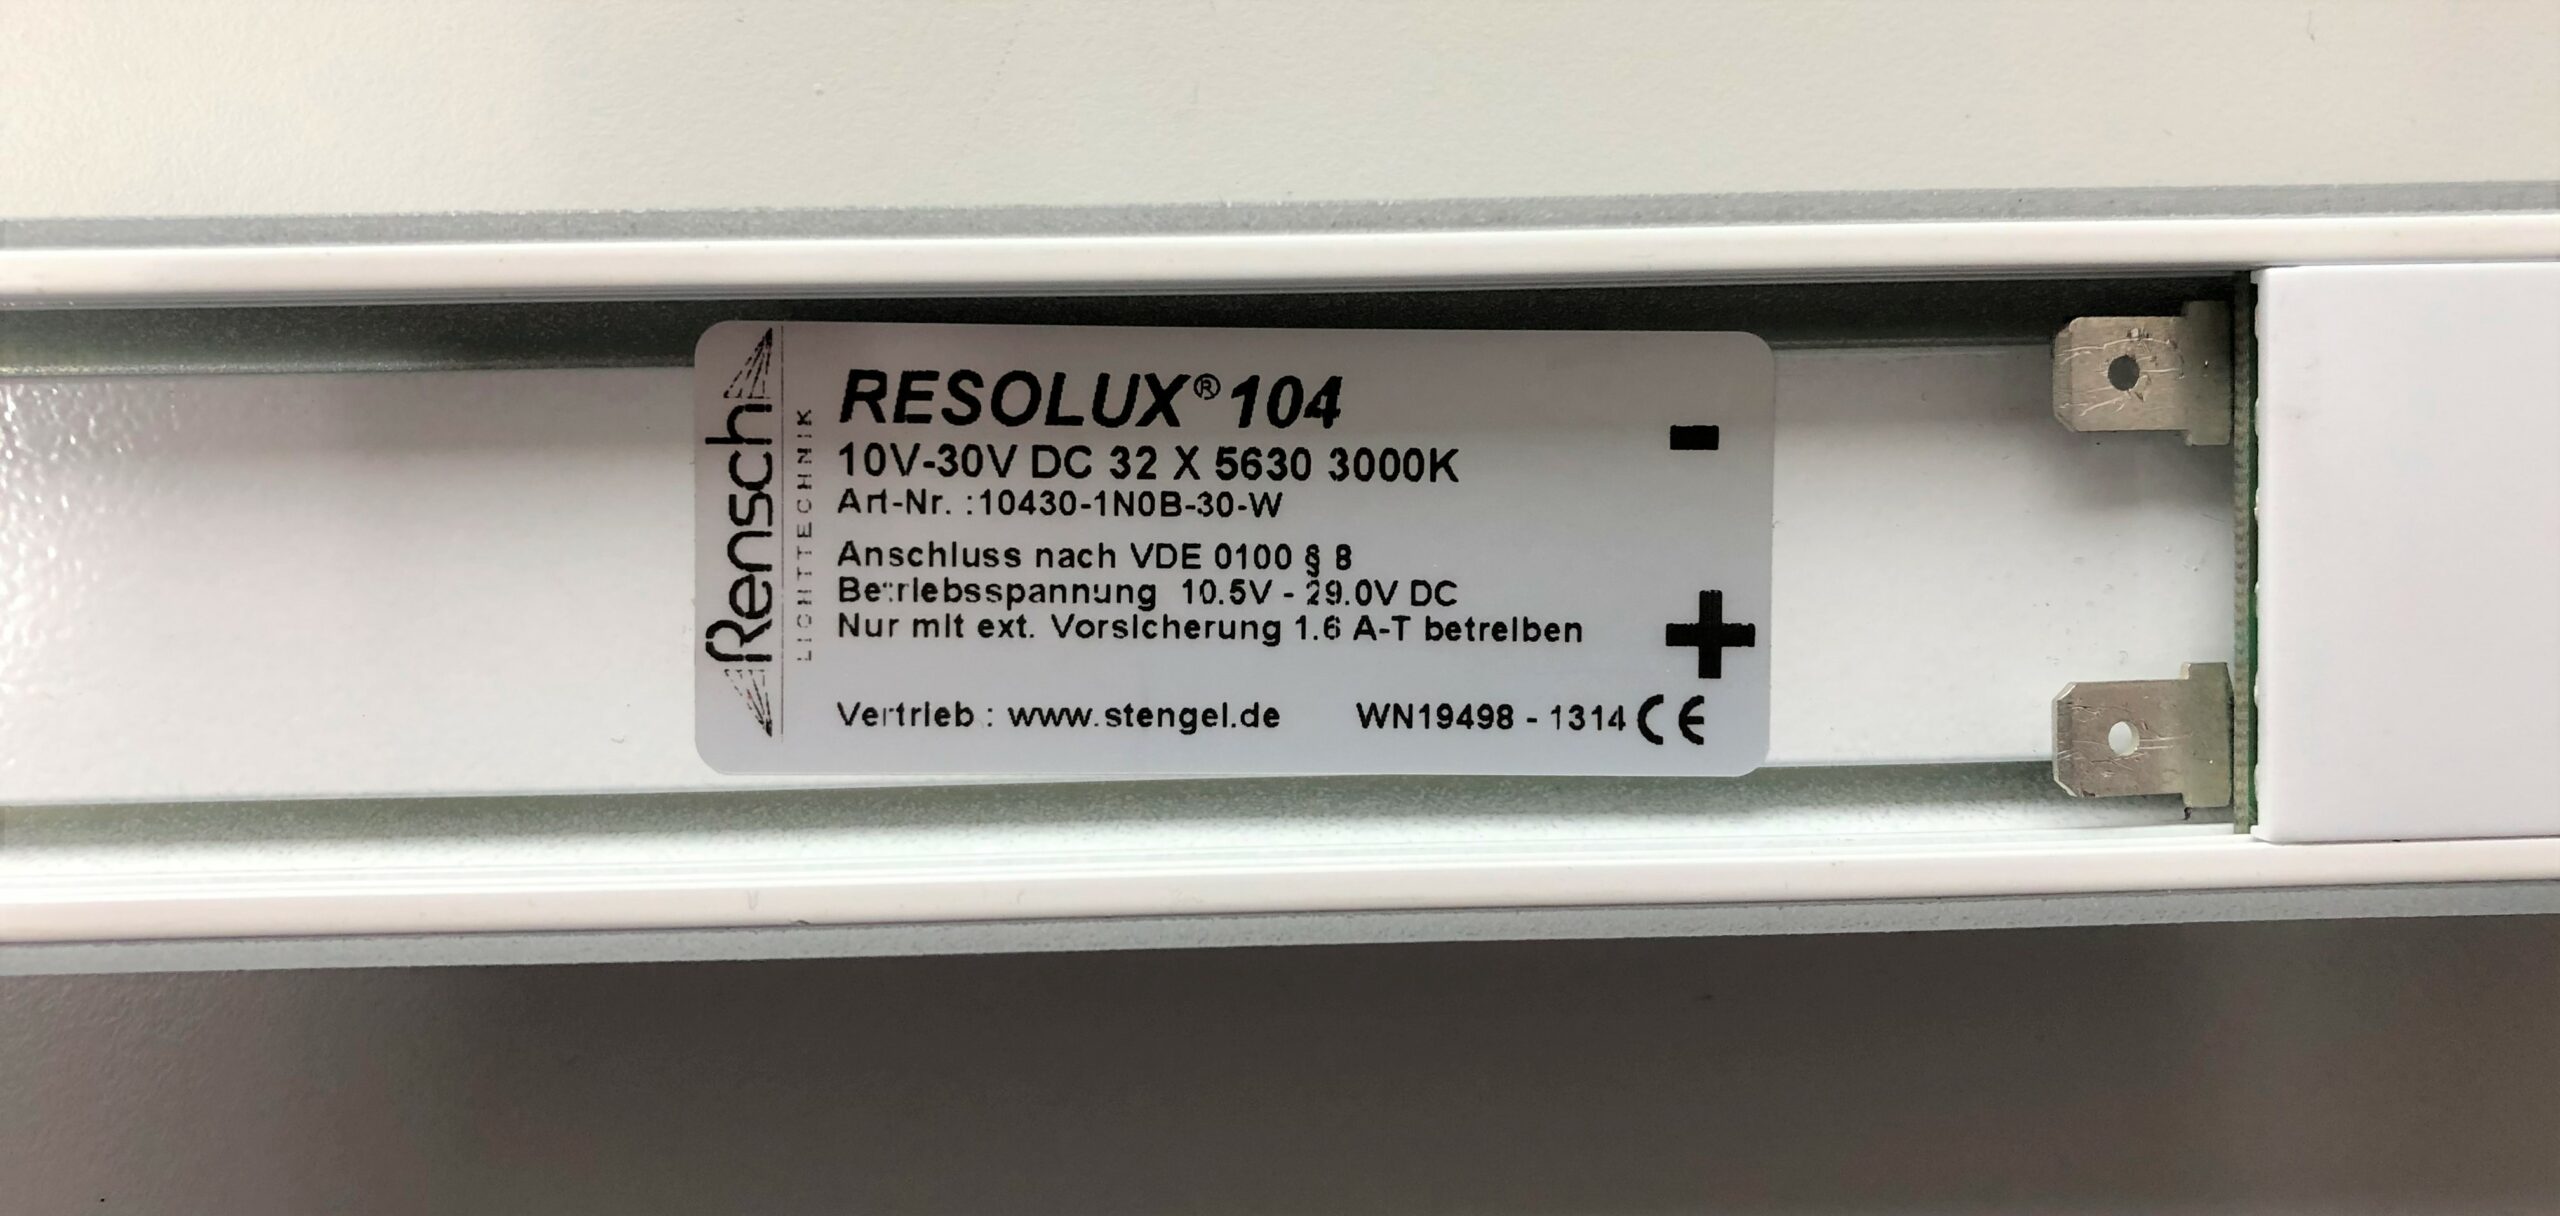 RESOLUX 104 10V-30V DC 32 X 5630 3000K LED